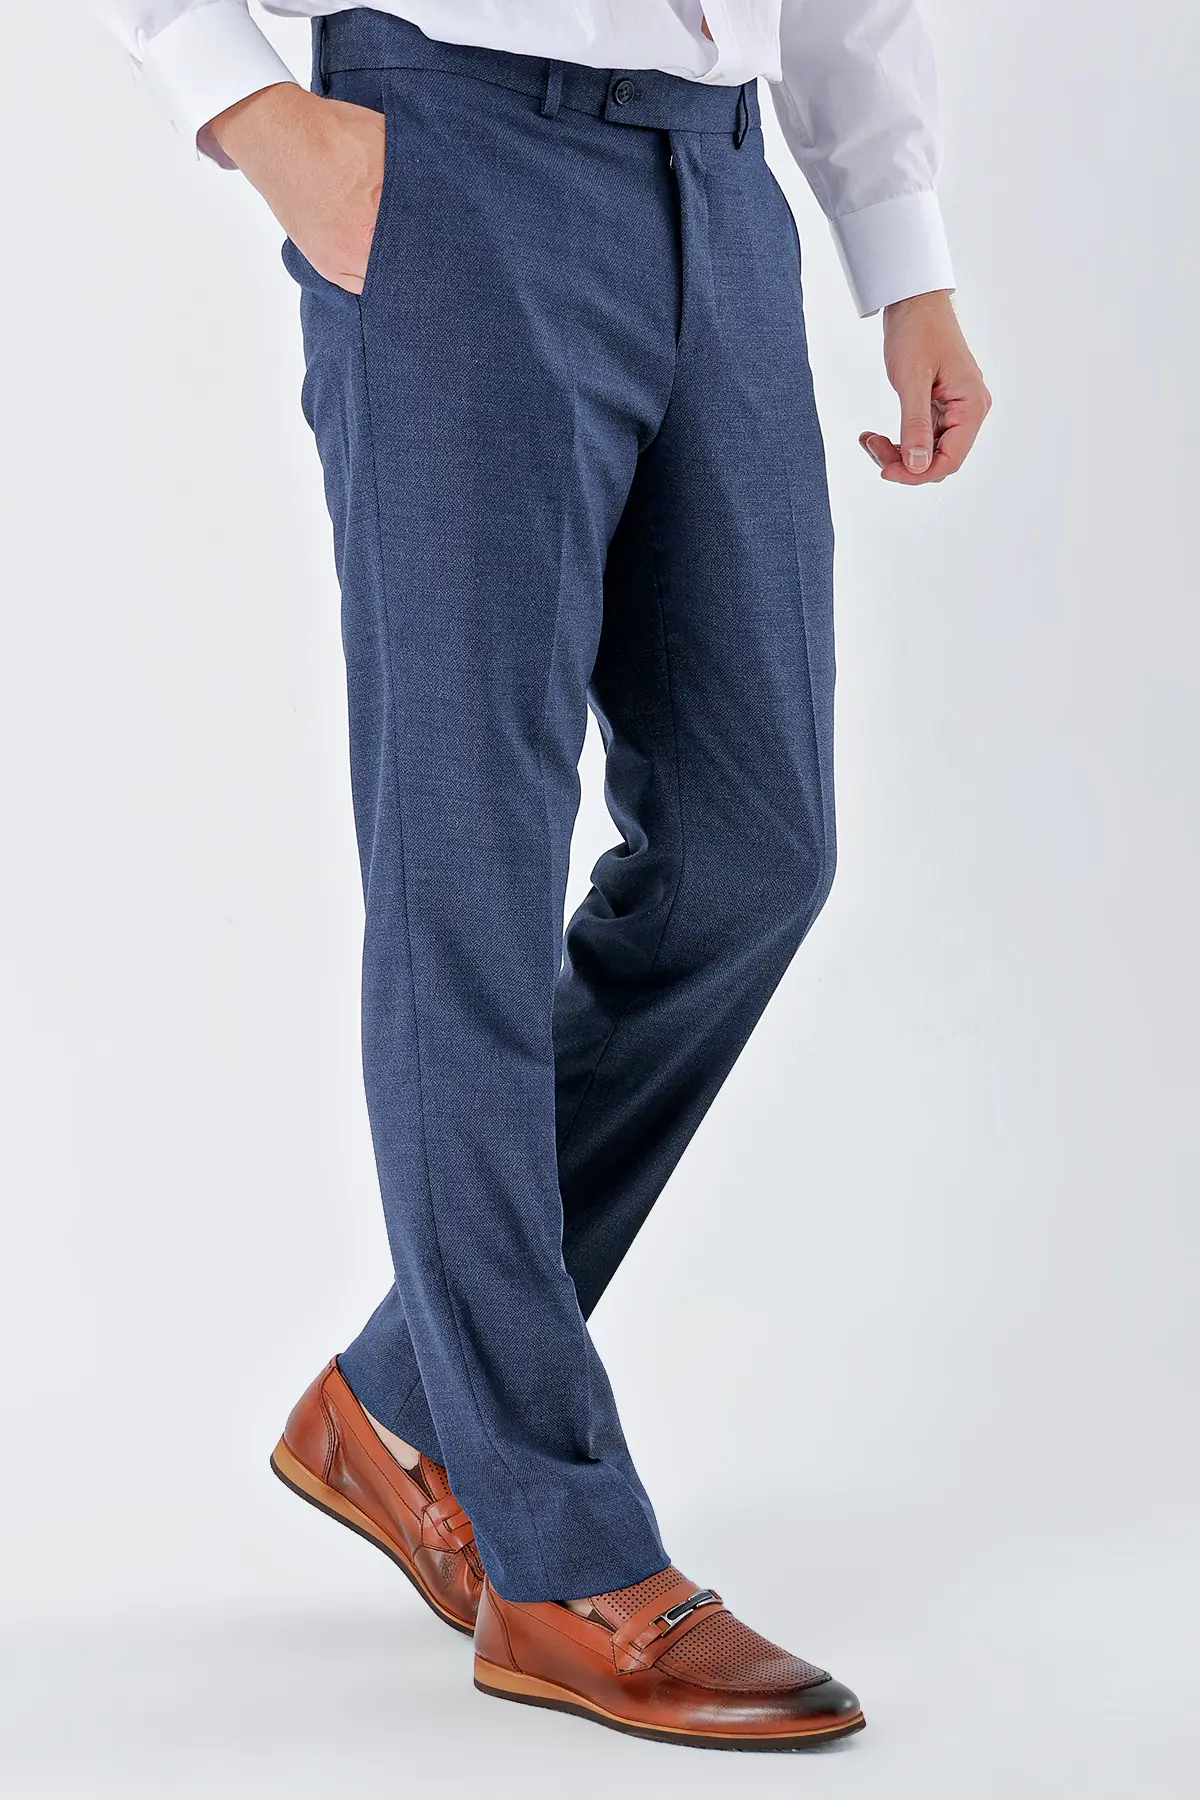 İmza Lacivert Yan Cepli Comfort Fit Rahat Kesim Klasik Pantolon 1003235152. 1